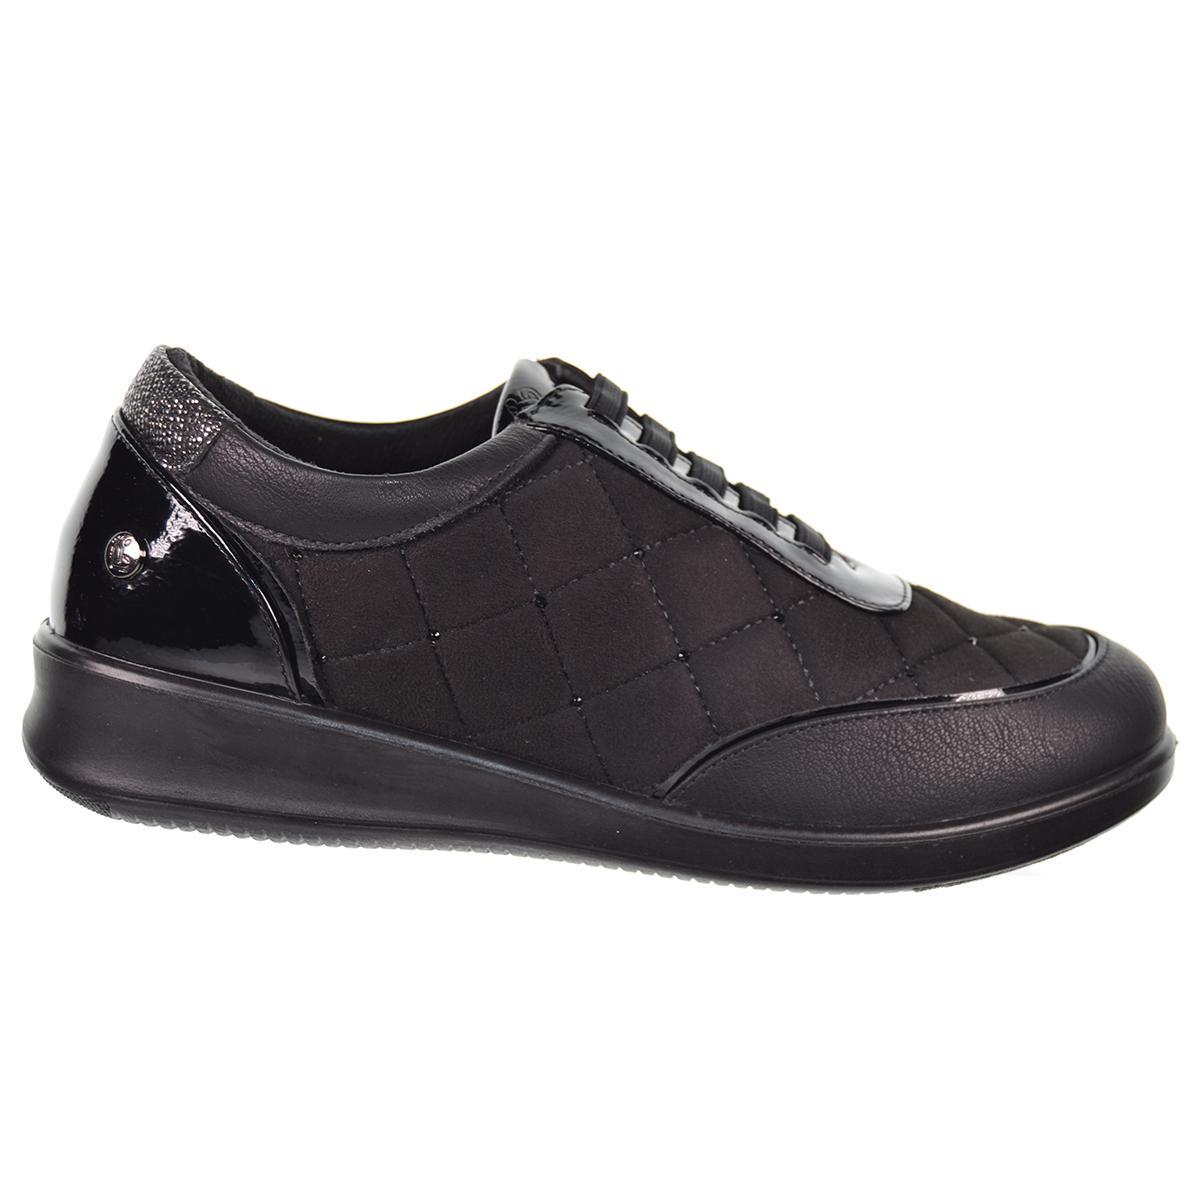 22307 Amarpies Zapato Confort en charol sintético y textil. plantilla extraíble. Cordones elásticos. Ideal para pies delicados.